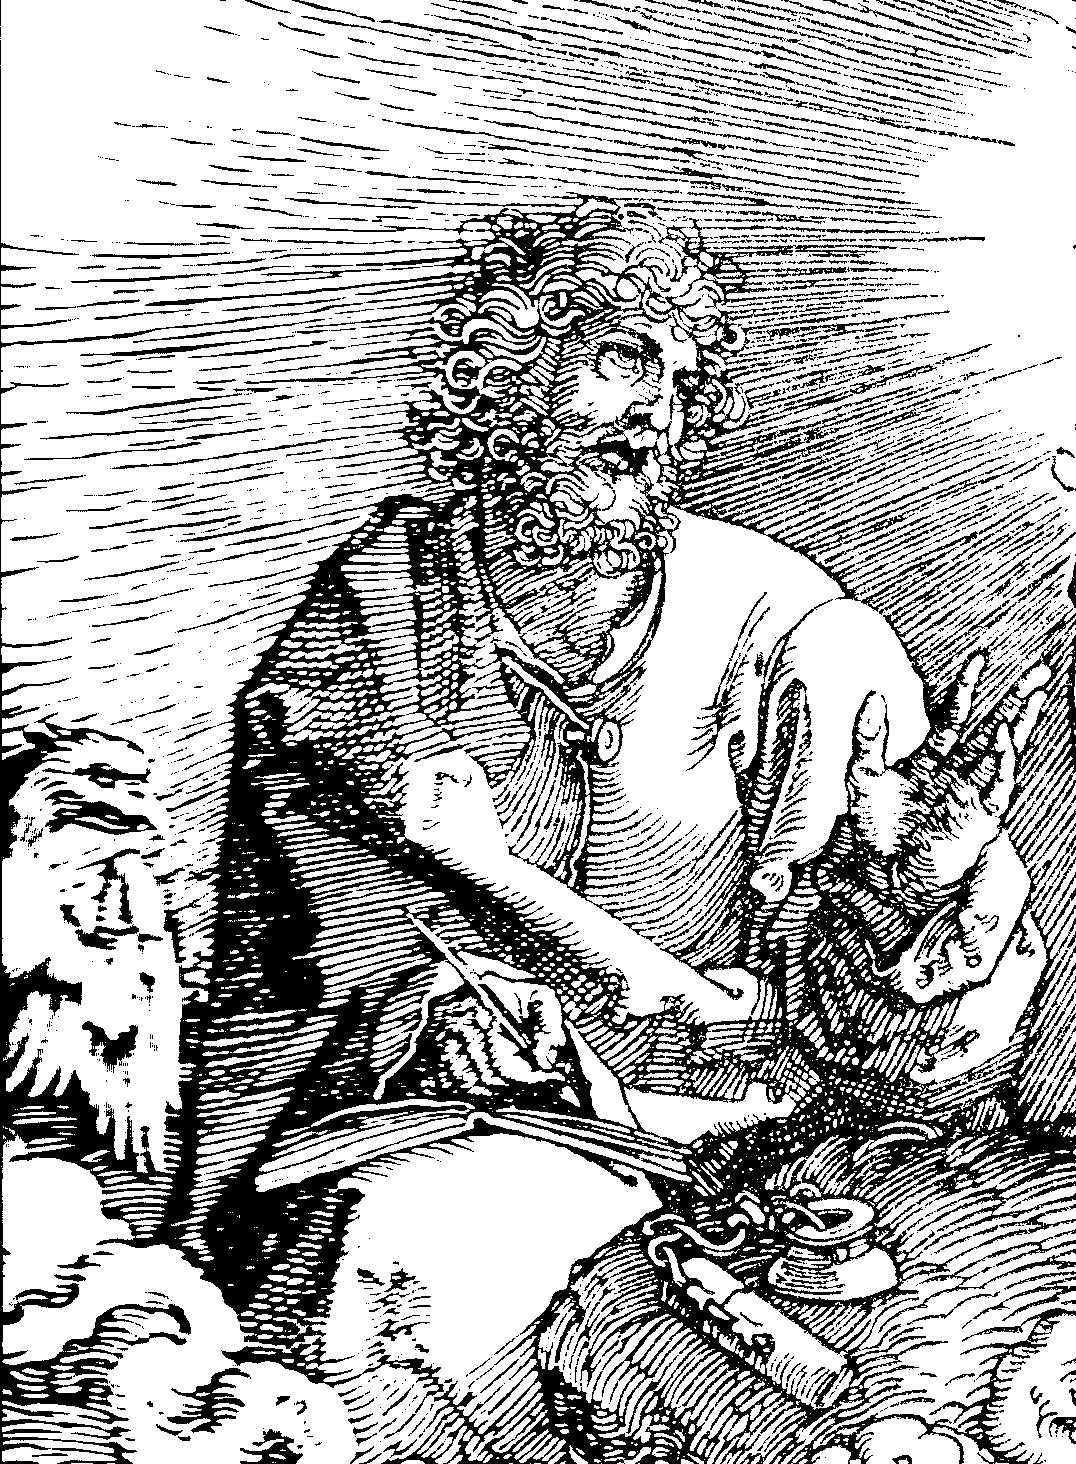 Dürer Joh1